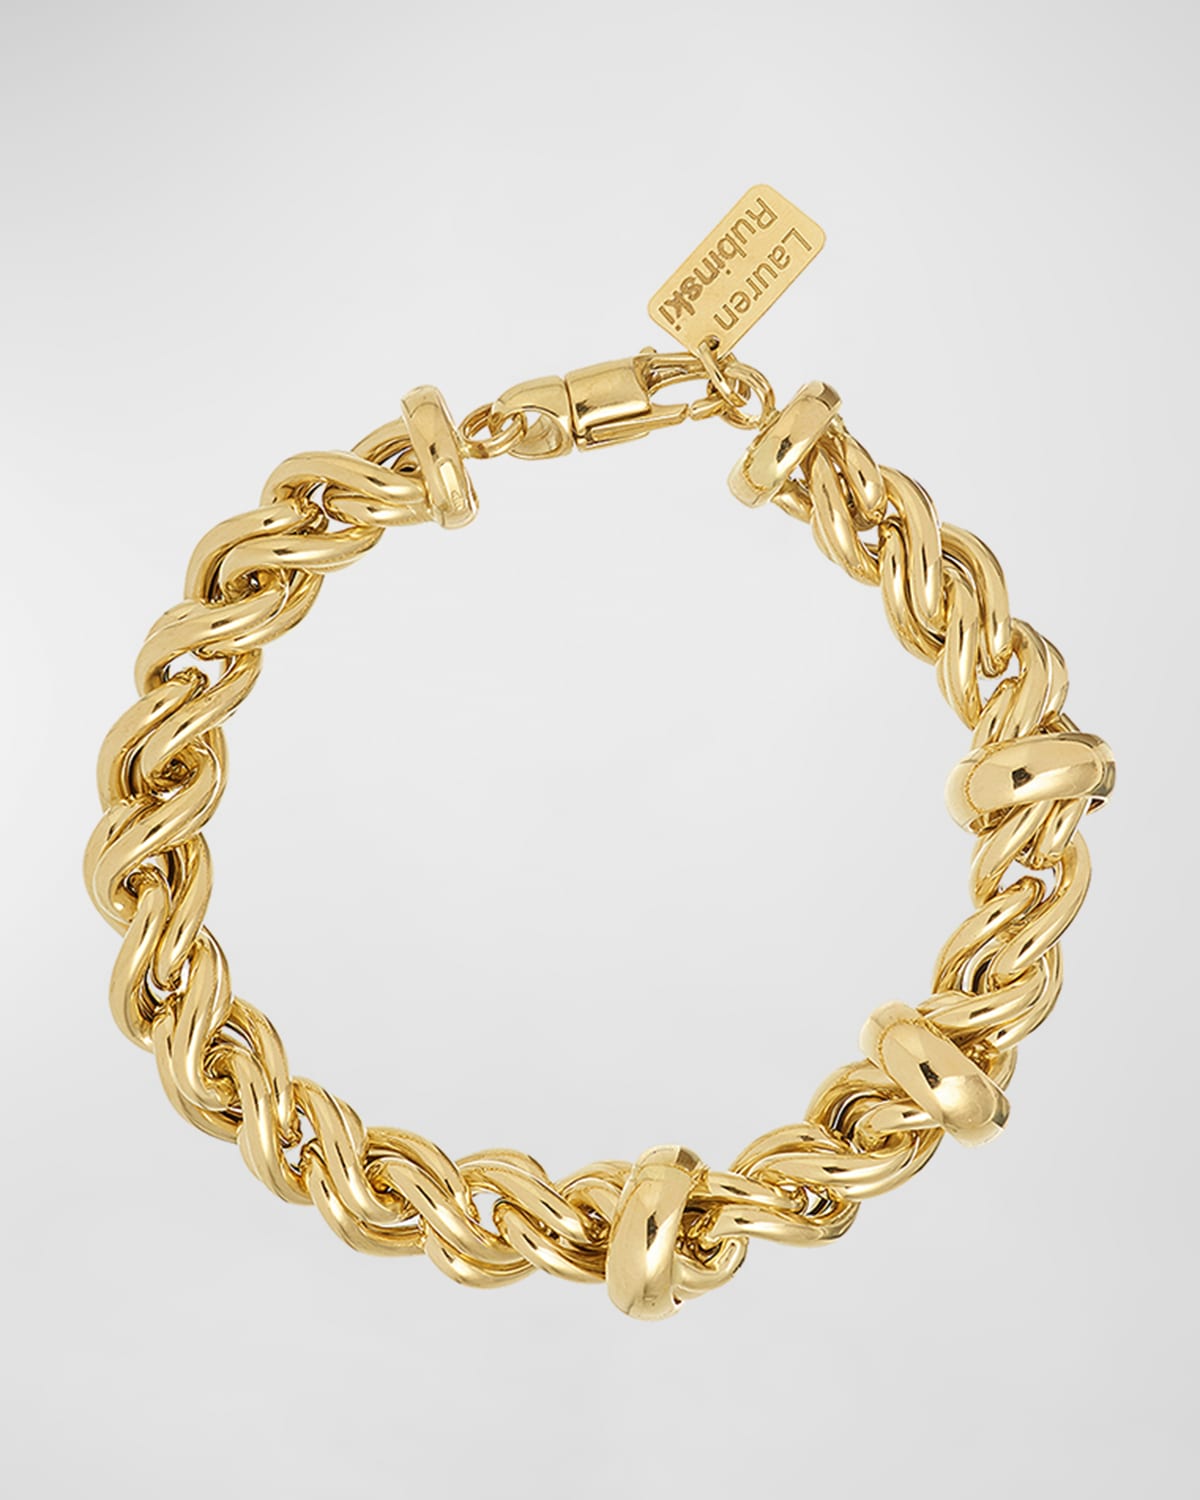 Lauren Rubinski 14k Medium Rope Chain And Ring Bracelet